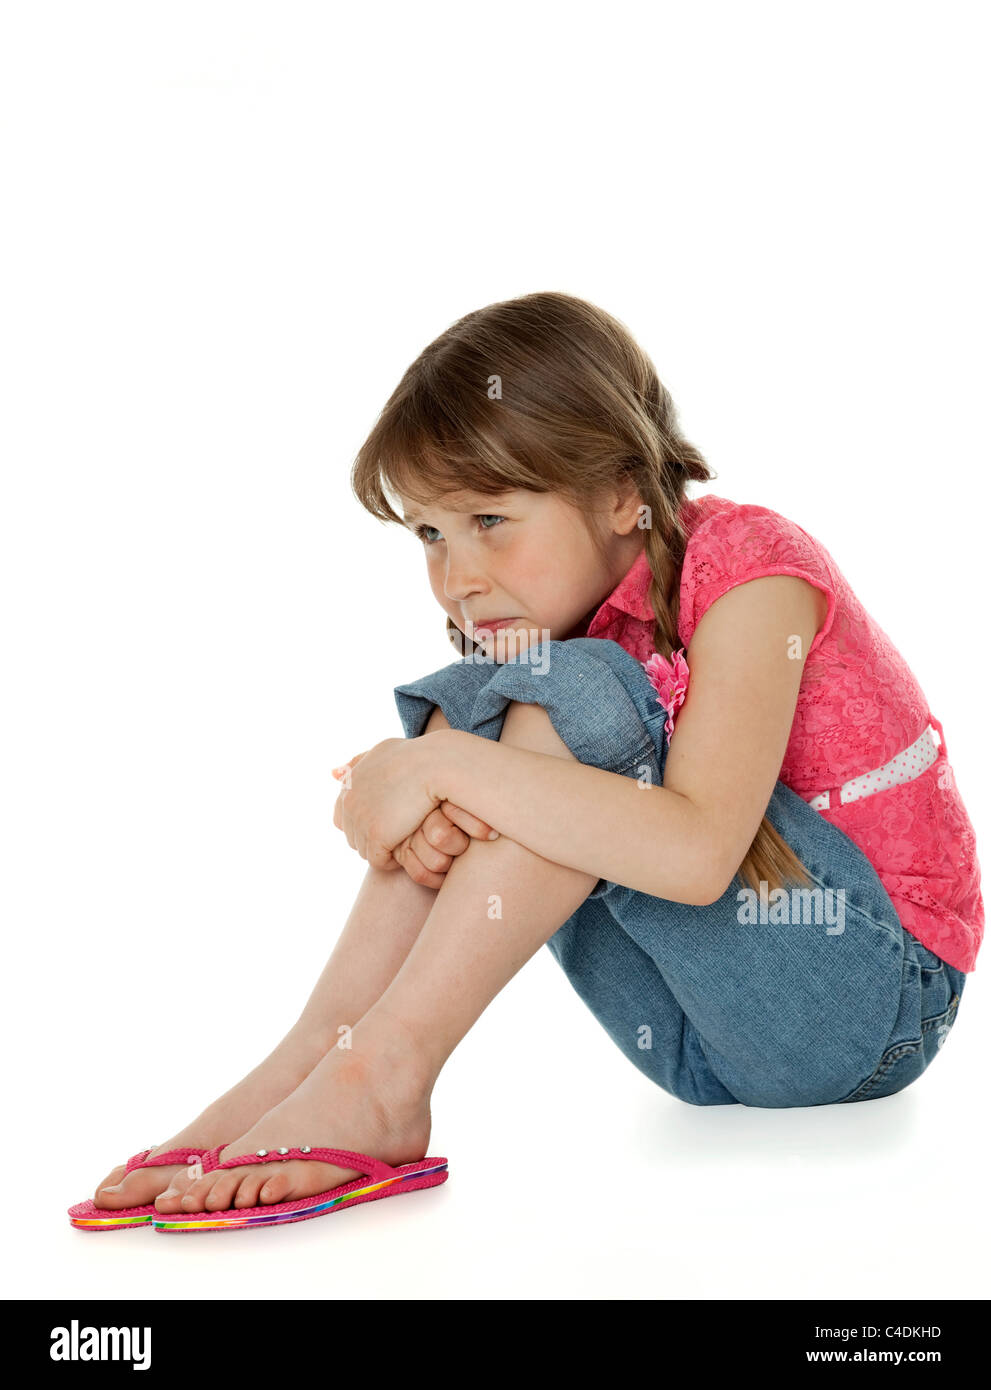 Junges Mädchen sitzen, Knien, umarmt traurigen Gesichtsausdruck auf weiß. Stockfoto